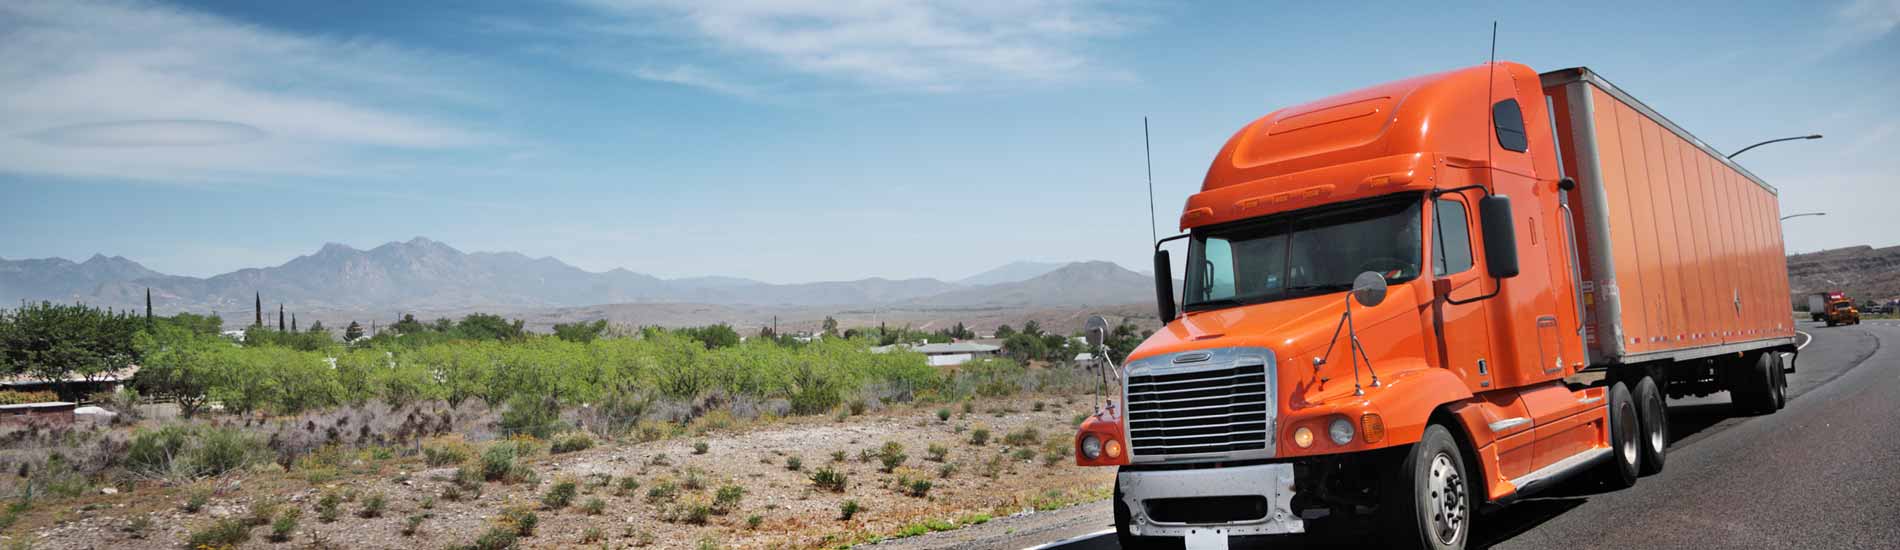 Truck finance tips